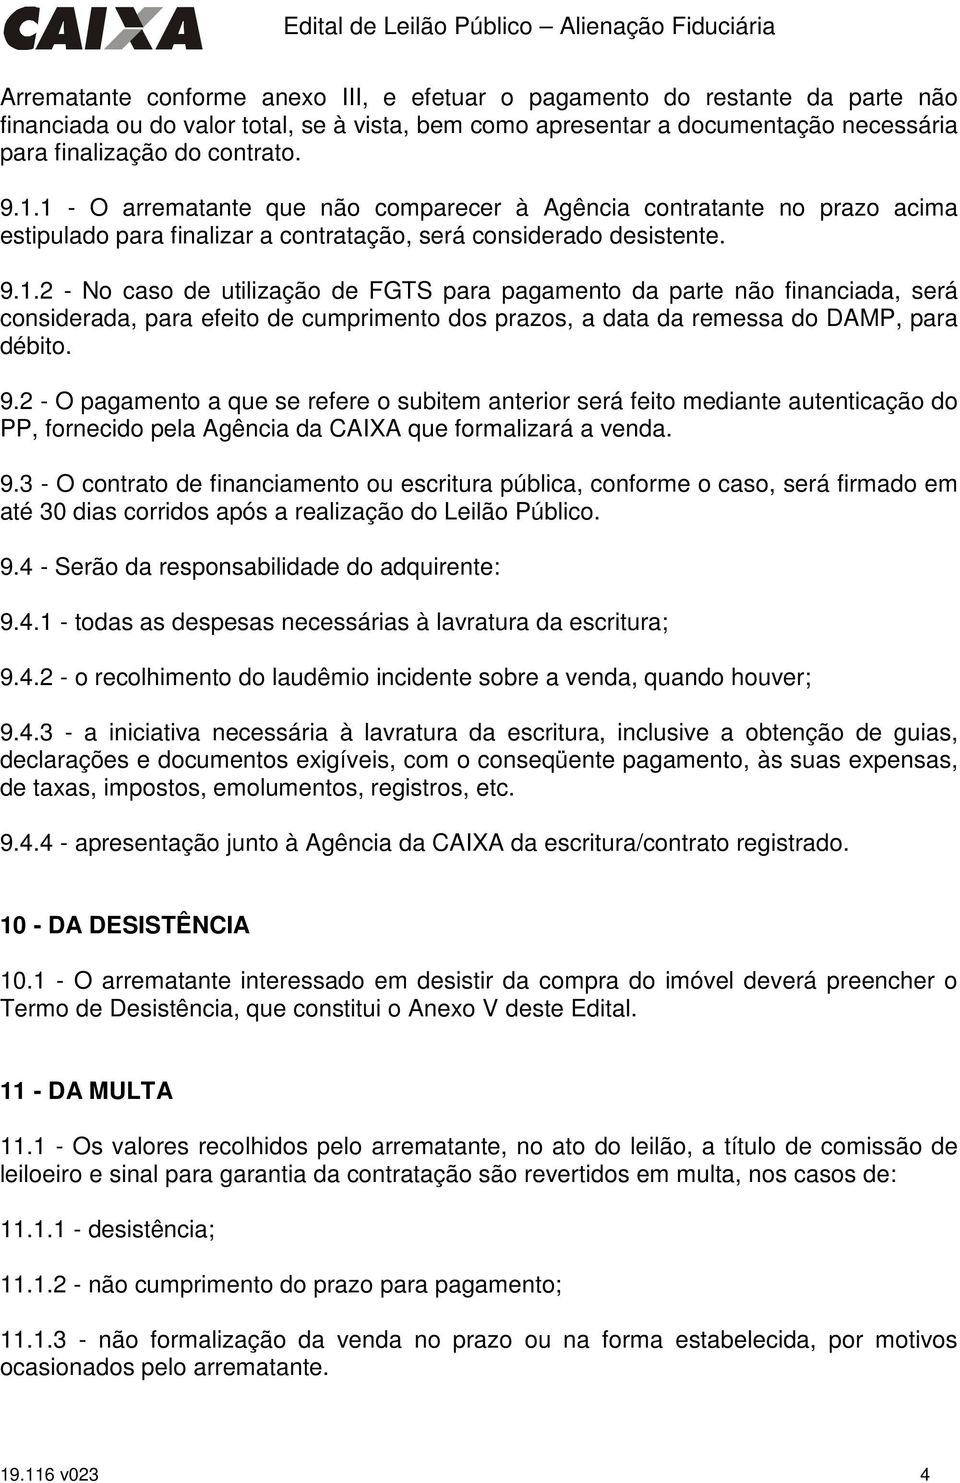 9.2 - O pagamento a que se refere o subitem anterior será feito mediante autenticação do PP, fornecido pela Agência da CAIXA que formalizará a venda. 9.